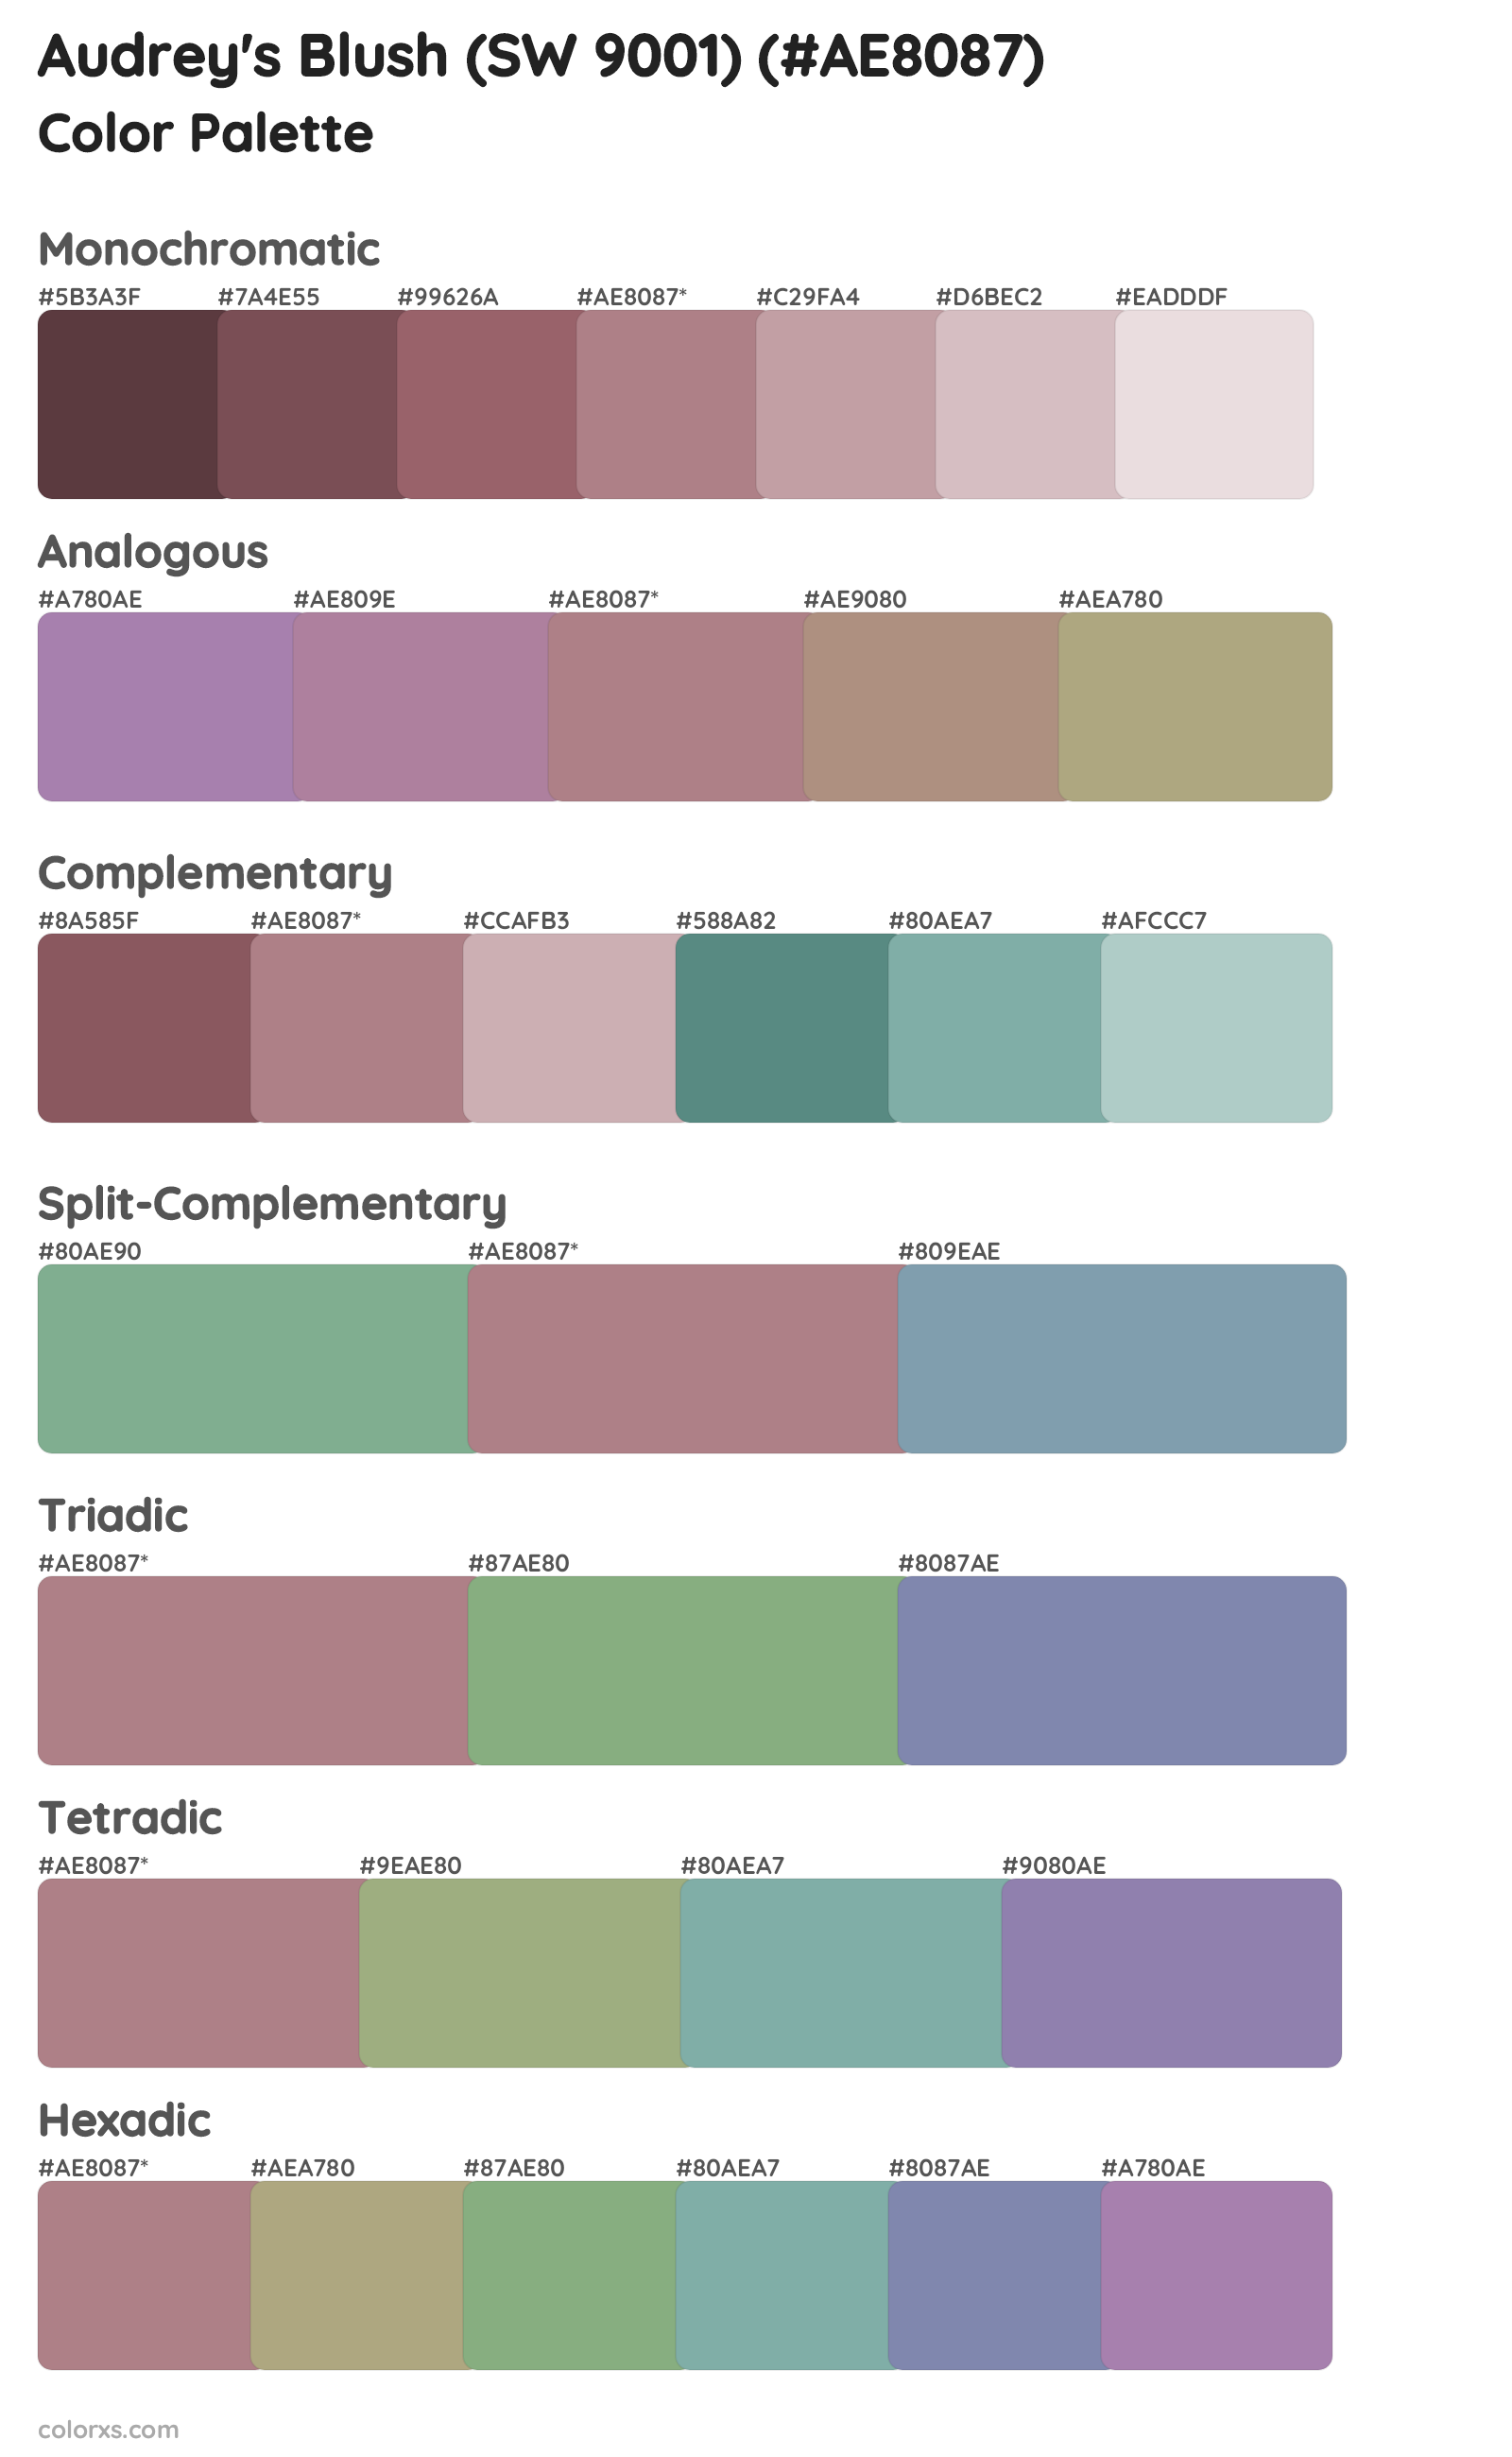 Audrey's Blush (SW 9001) Color Scheme Palettes